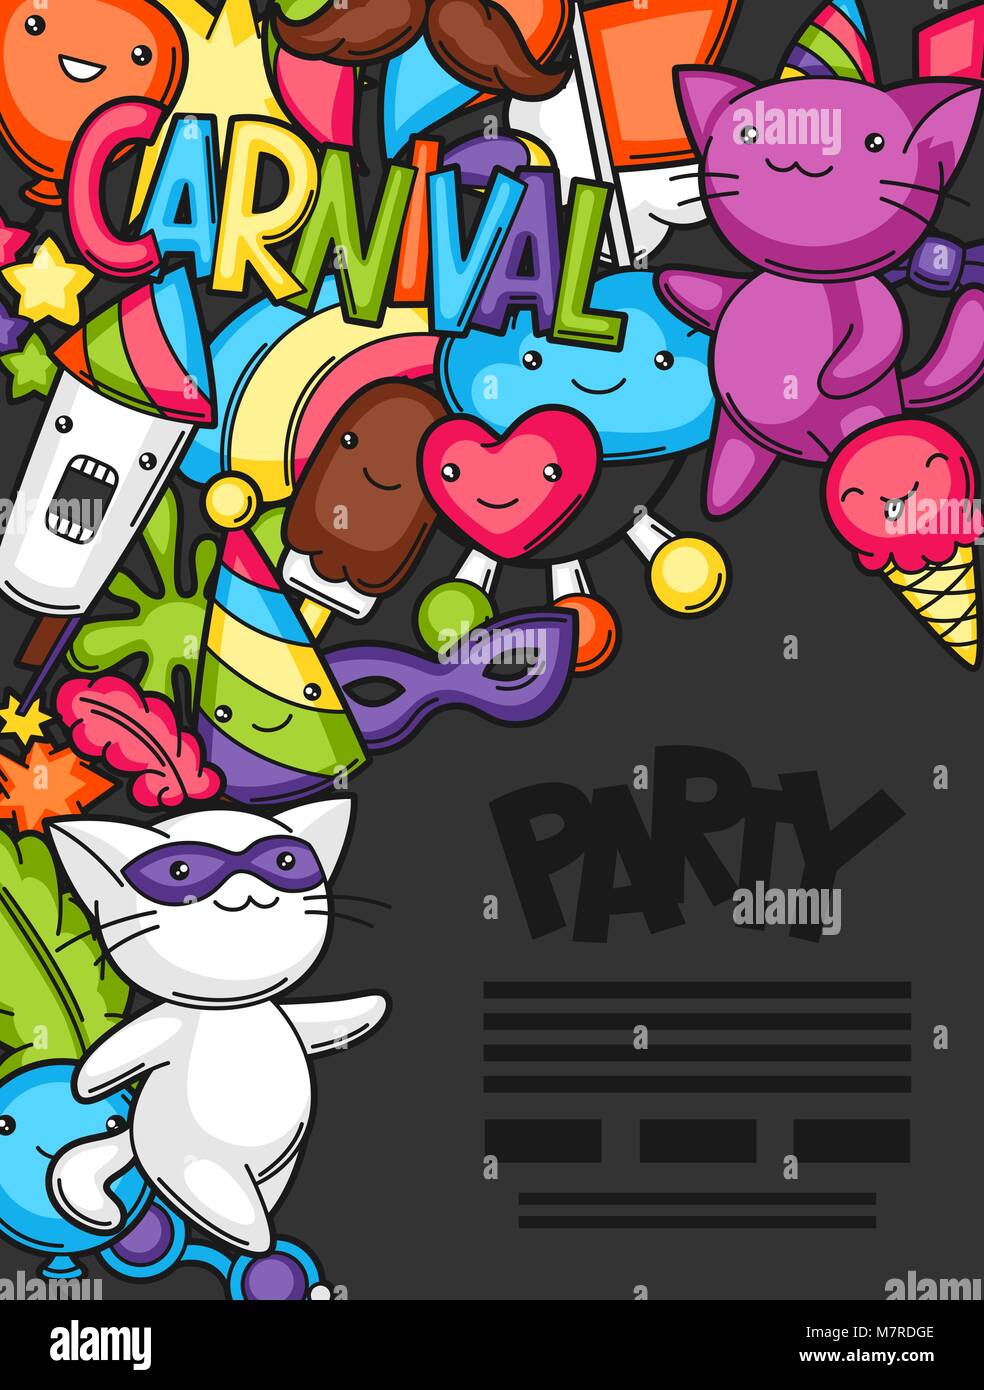 Karneval Party kawaii flayer. Süße Katzen, Dekorationen für Feiern, Objekte und Symbole Stock Vektor